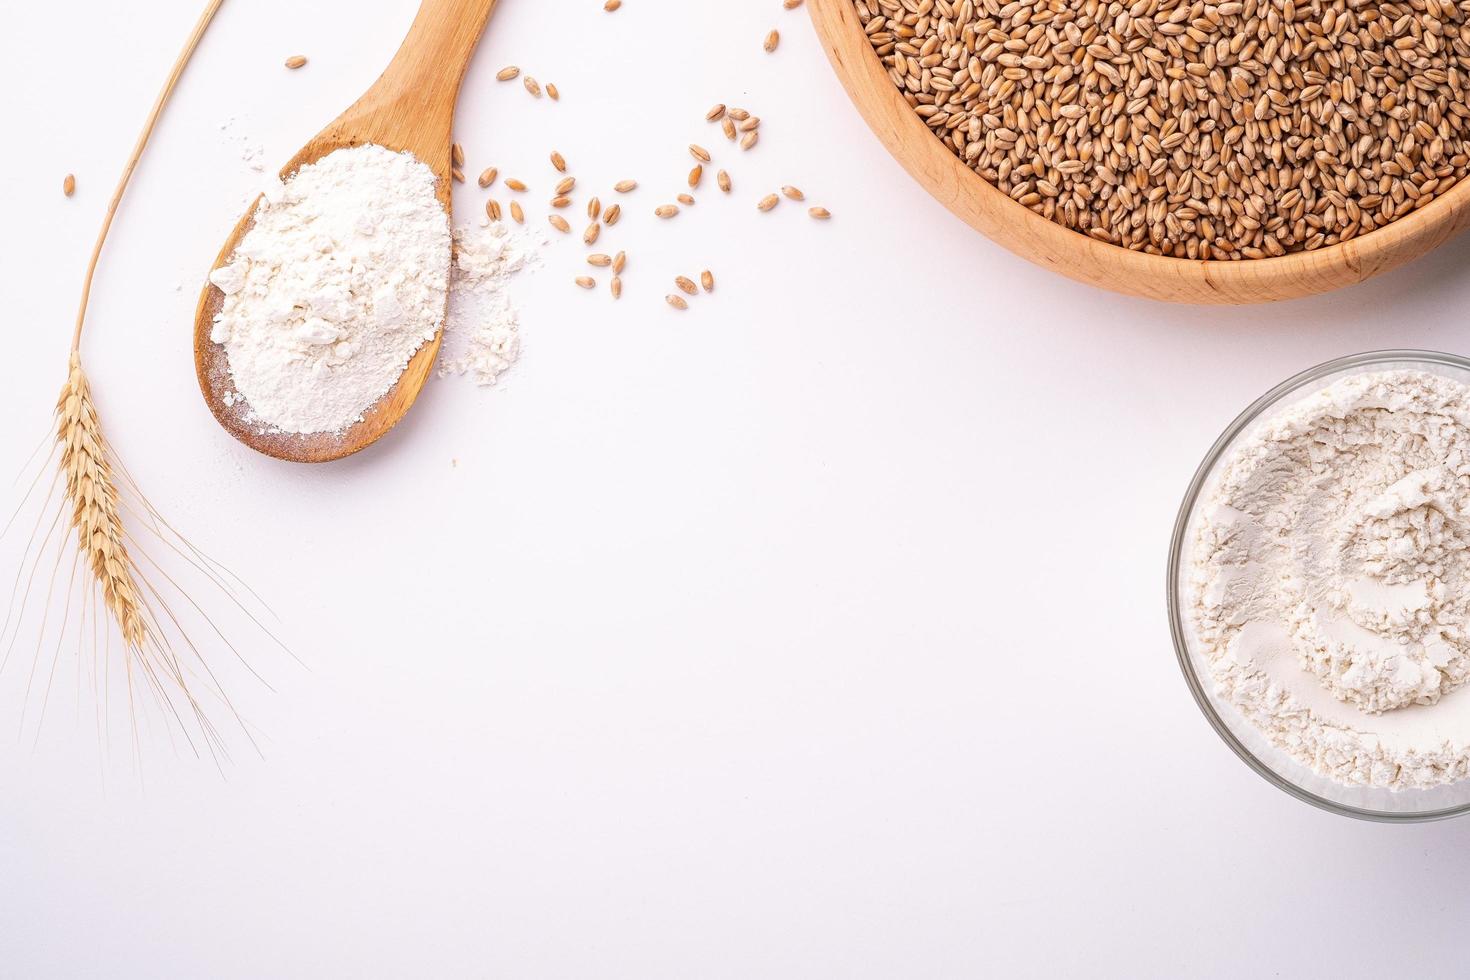 graines et grains de blé dans un bol en bois sur fond blanc photo